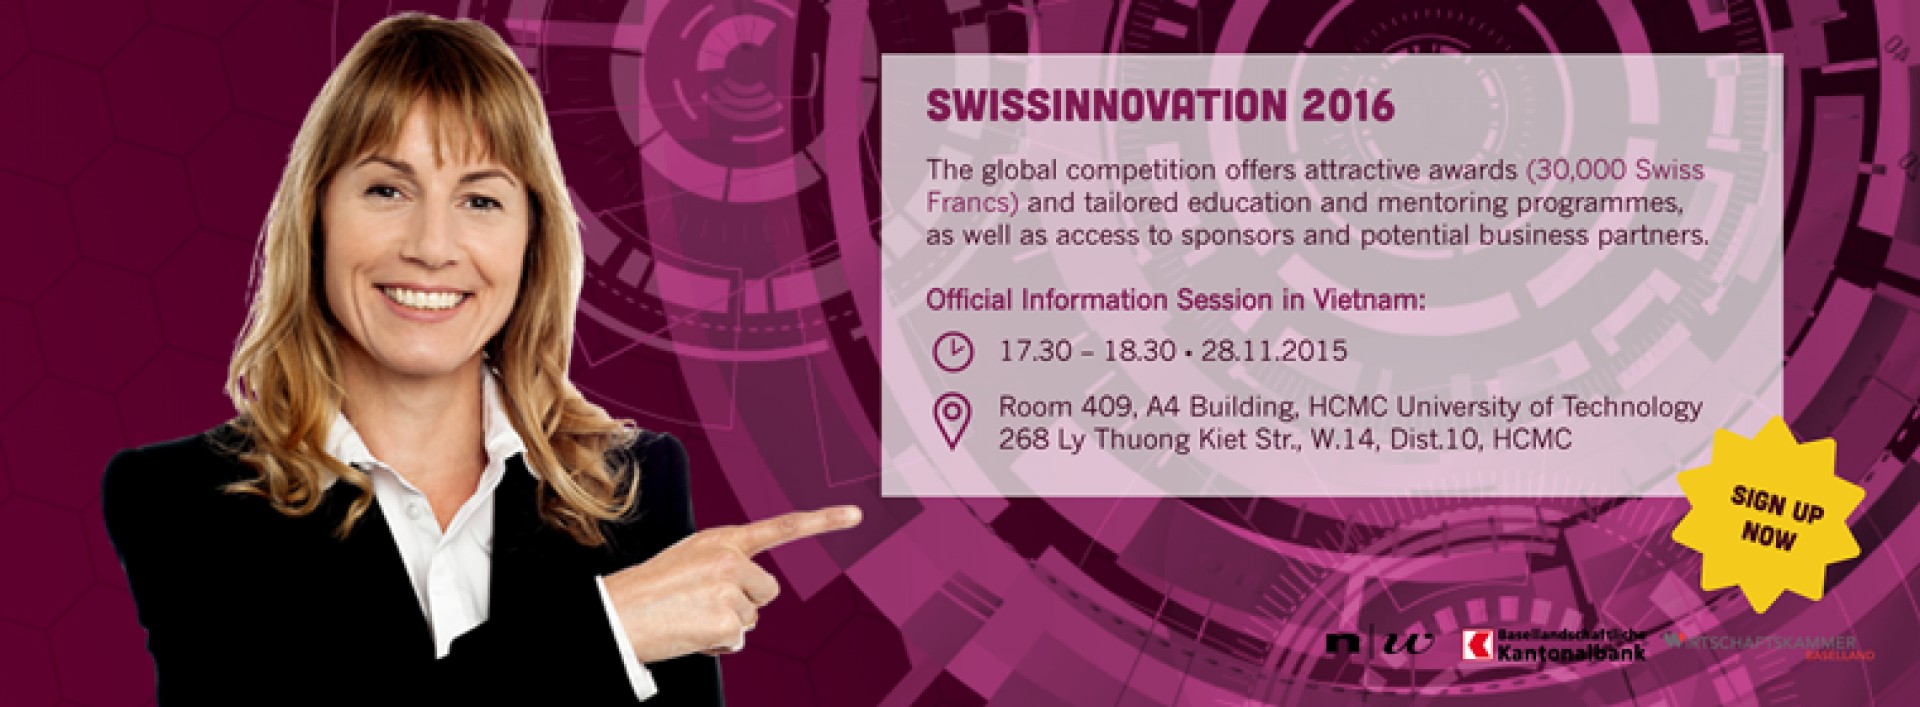 Cuộc Thi SwissInnovation Challenge  dành cho các START-UP chính thức khởi động